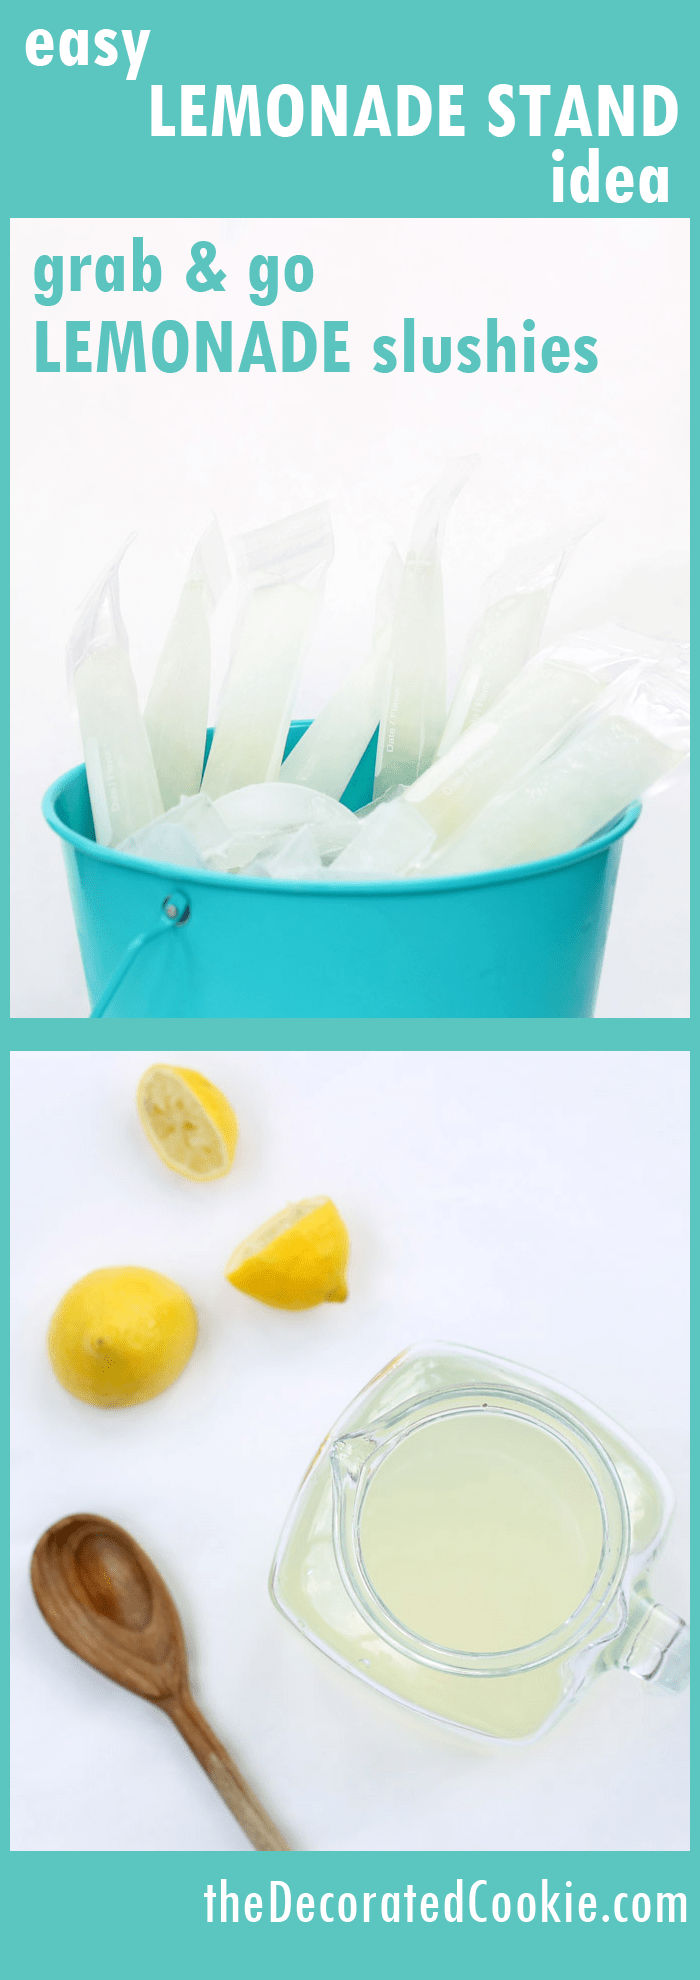 lemonade stand idea: frozen lemonade slushies